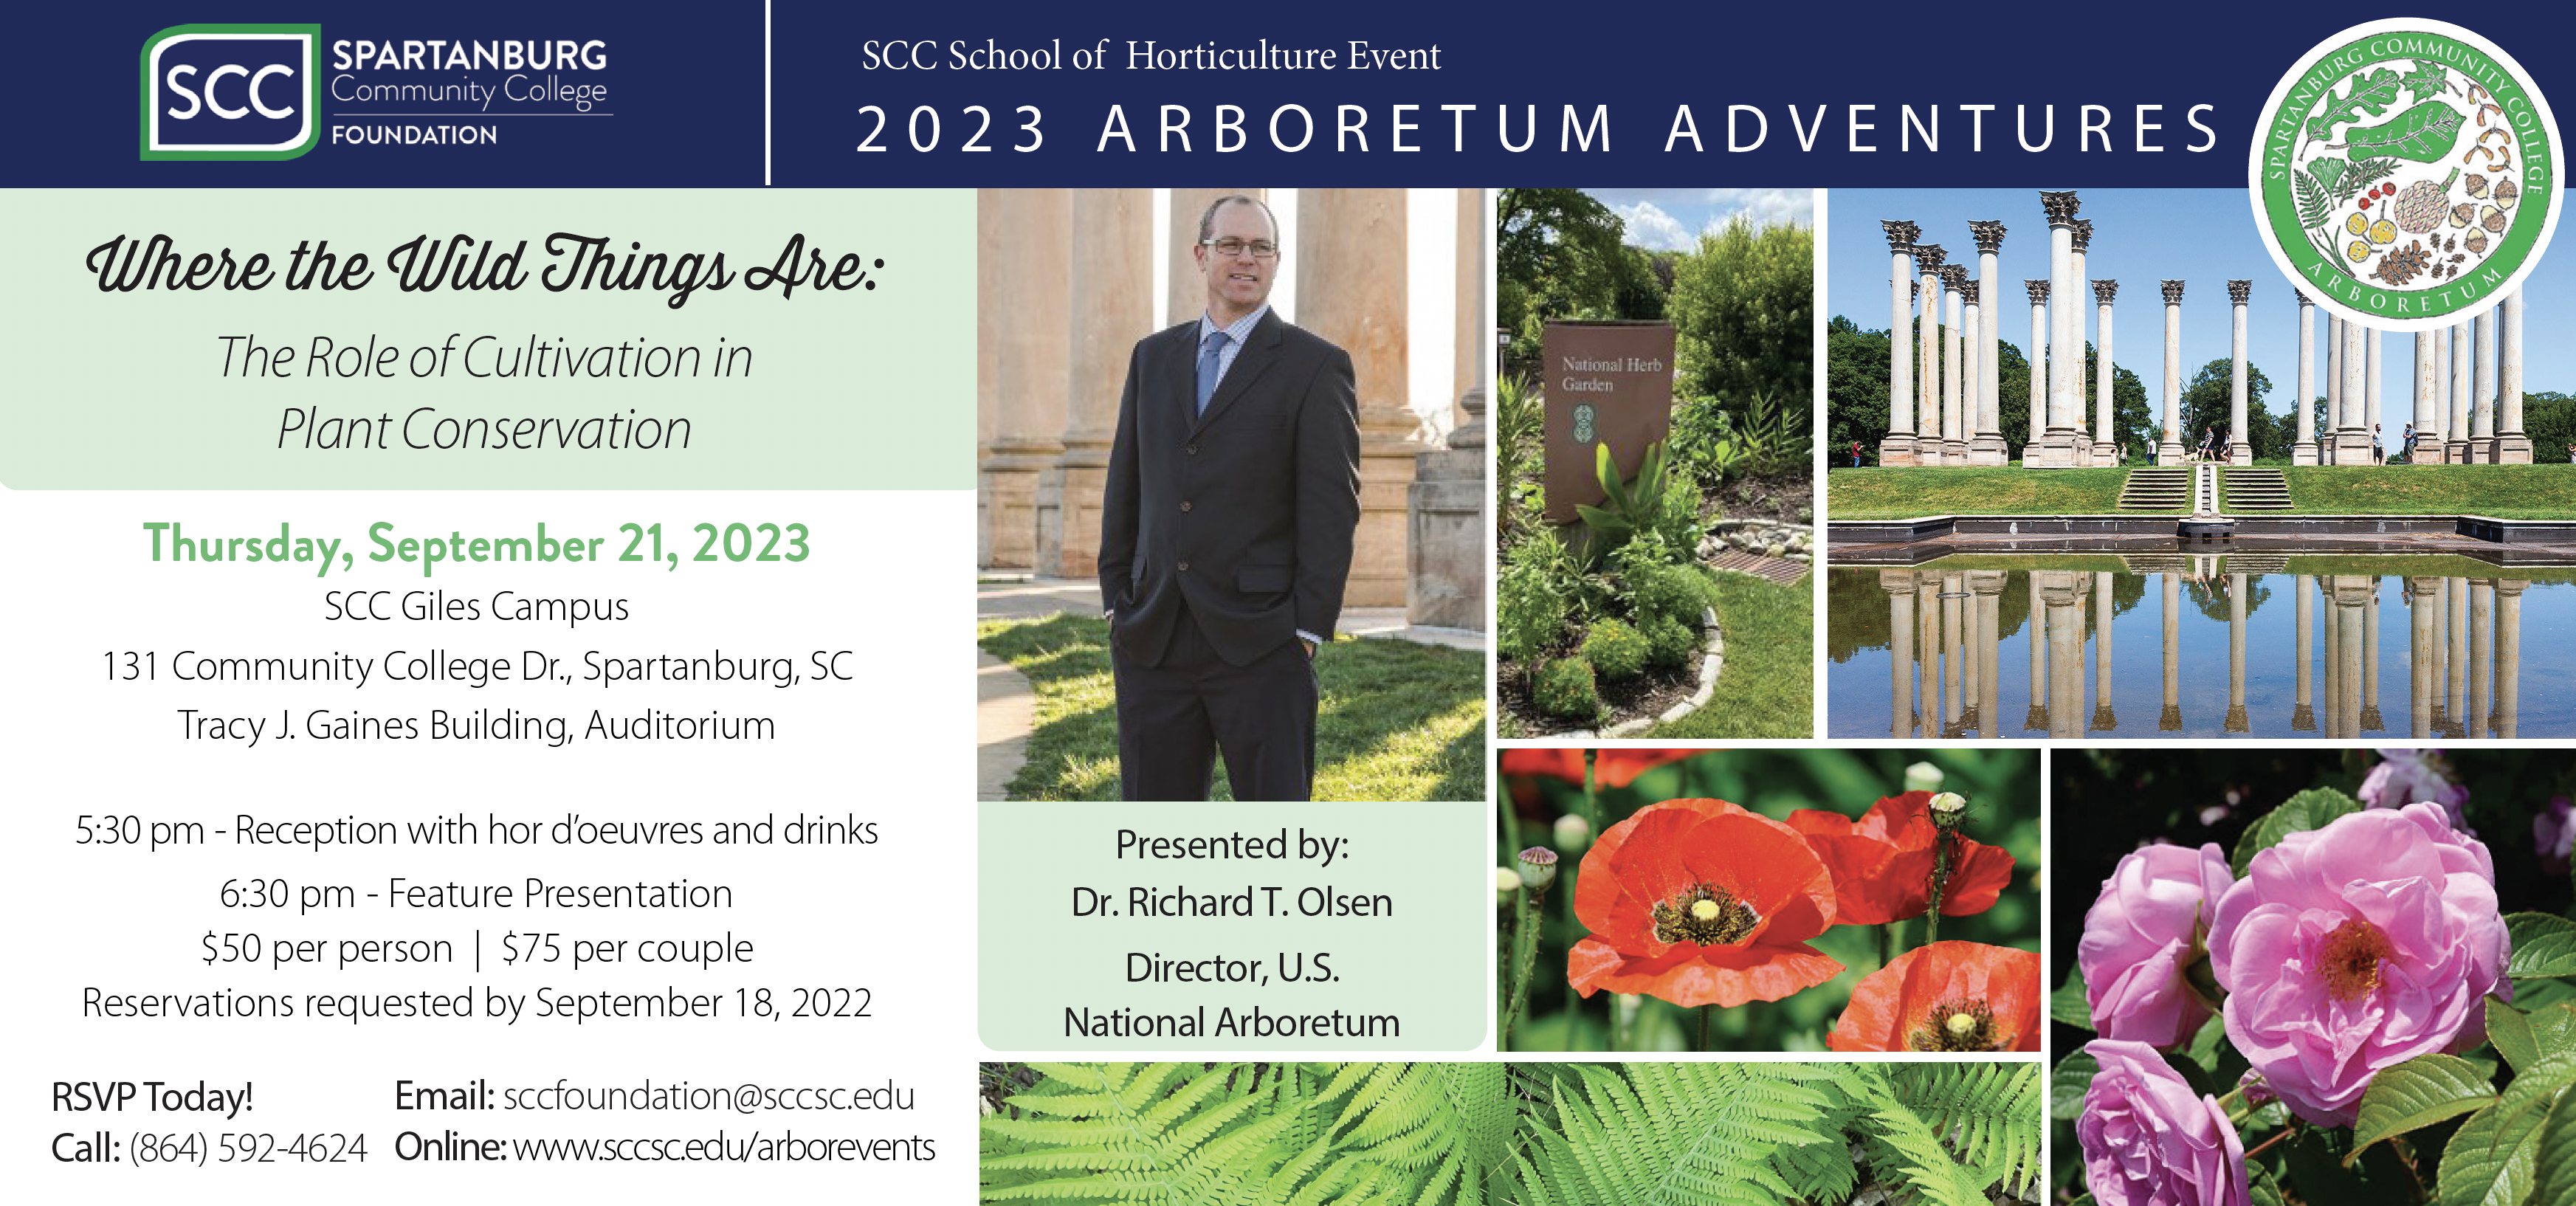 Arboretum Adventures 2023